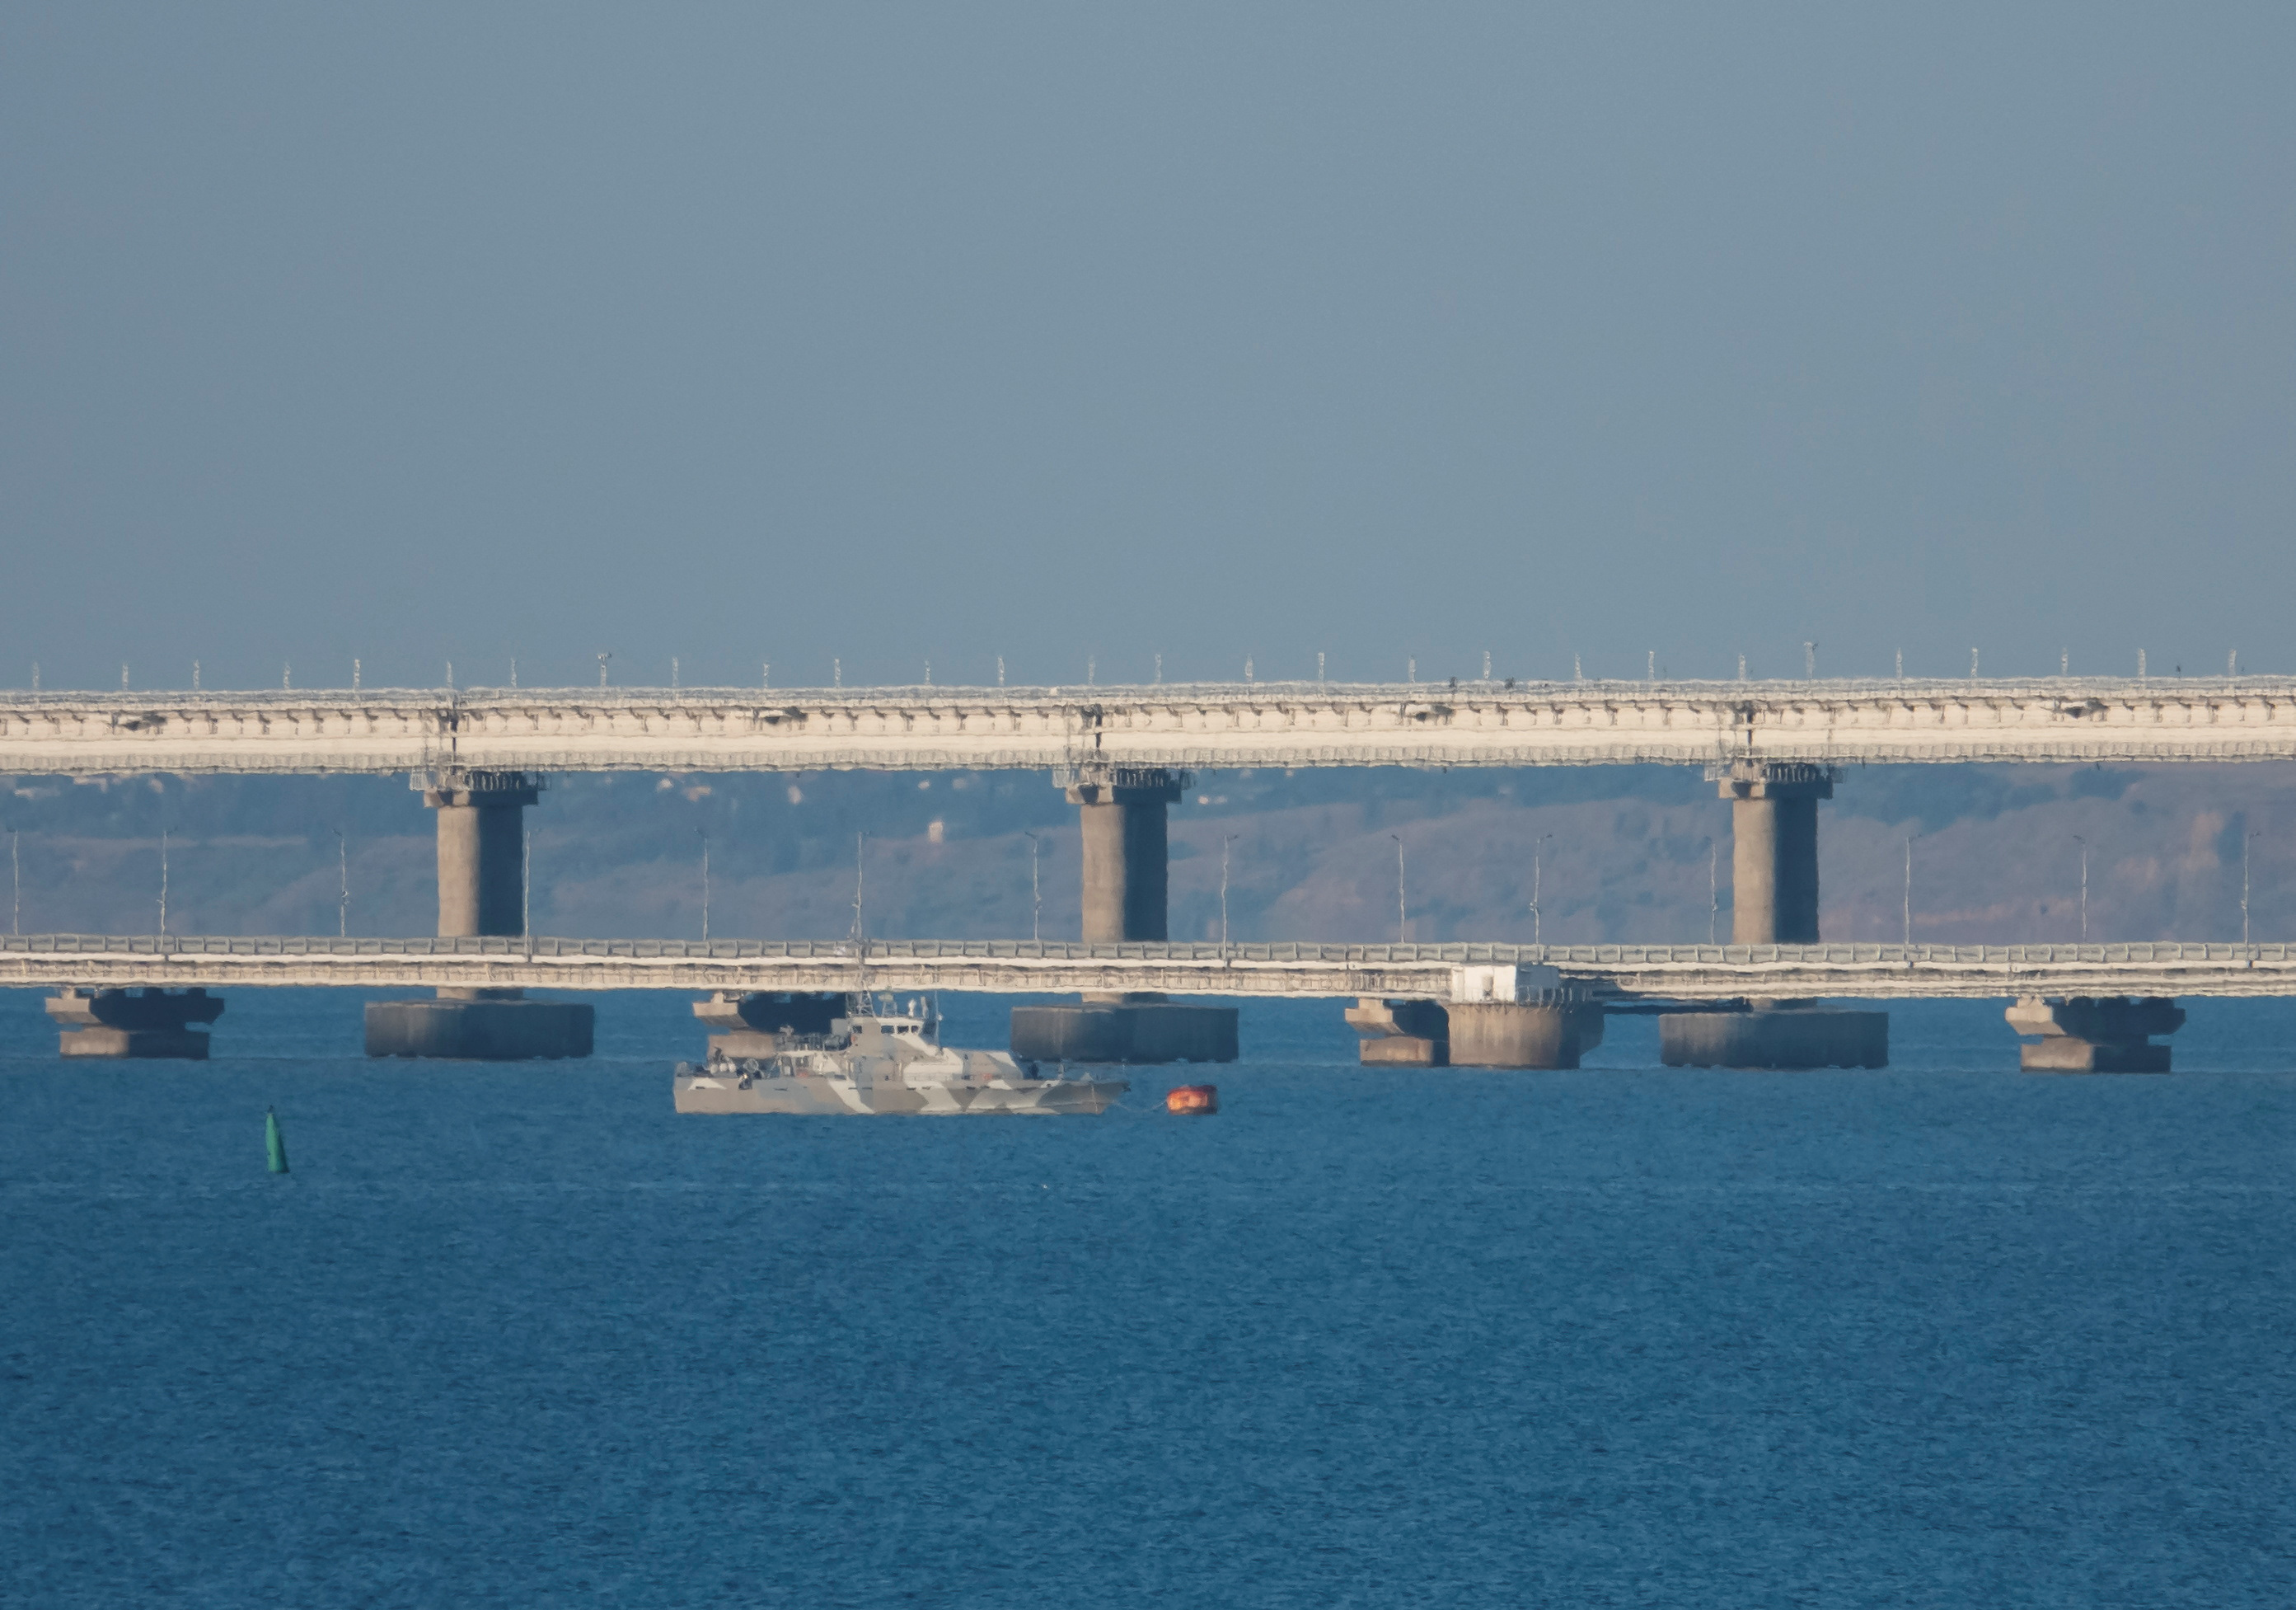 Un barco armado navega junto al puente de Crimea que conecta la parte continental de Rusia con la península a través del estrecho de Kerch.